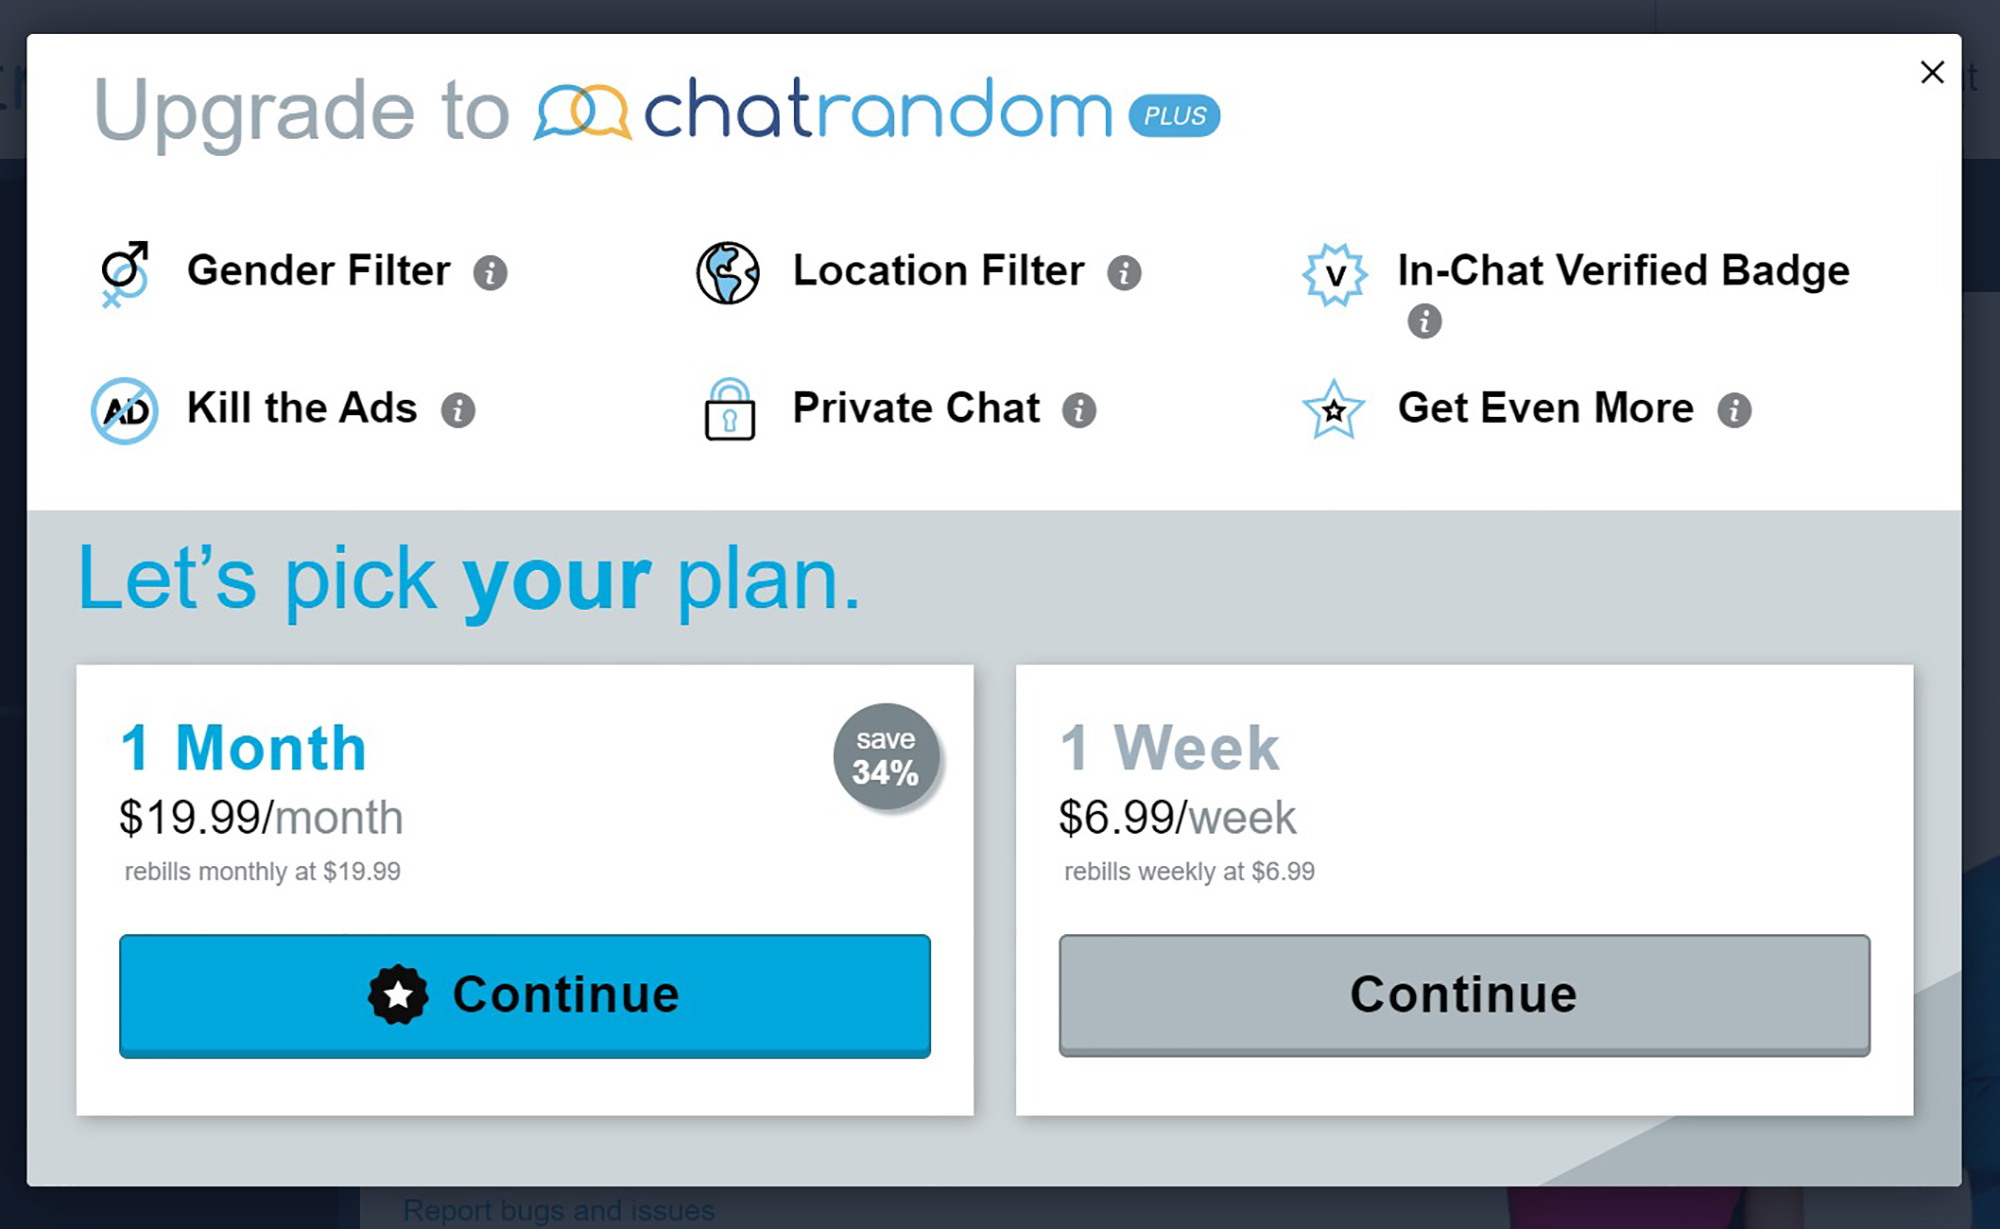 Chatrandom APP : Random Video Chat APP | Chatrandom Chatrandom Plus Review ...